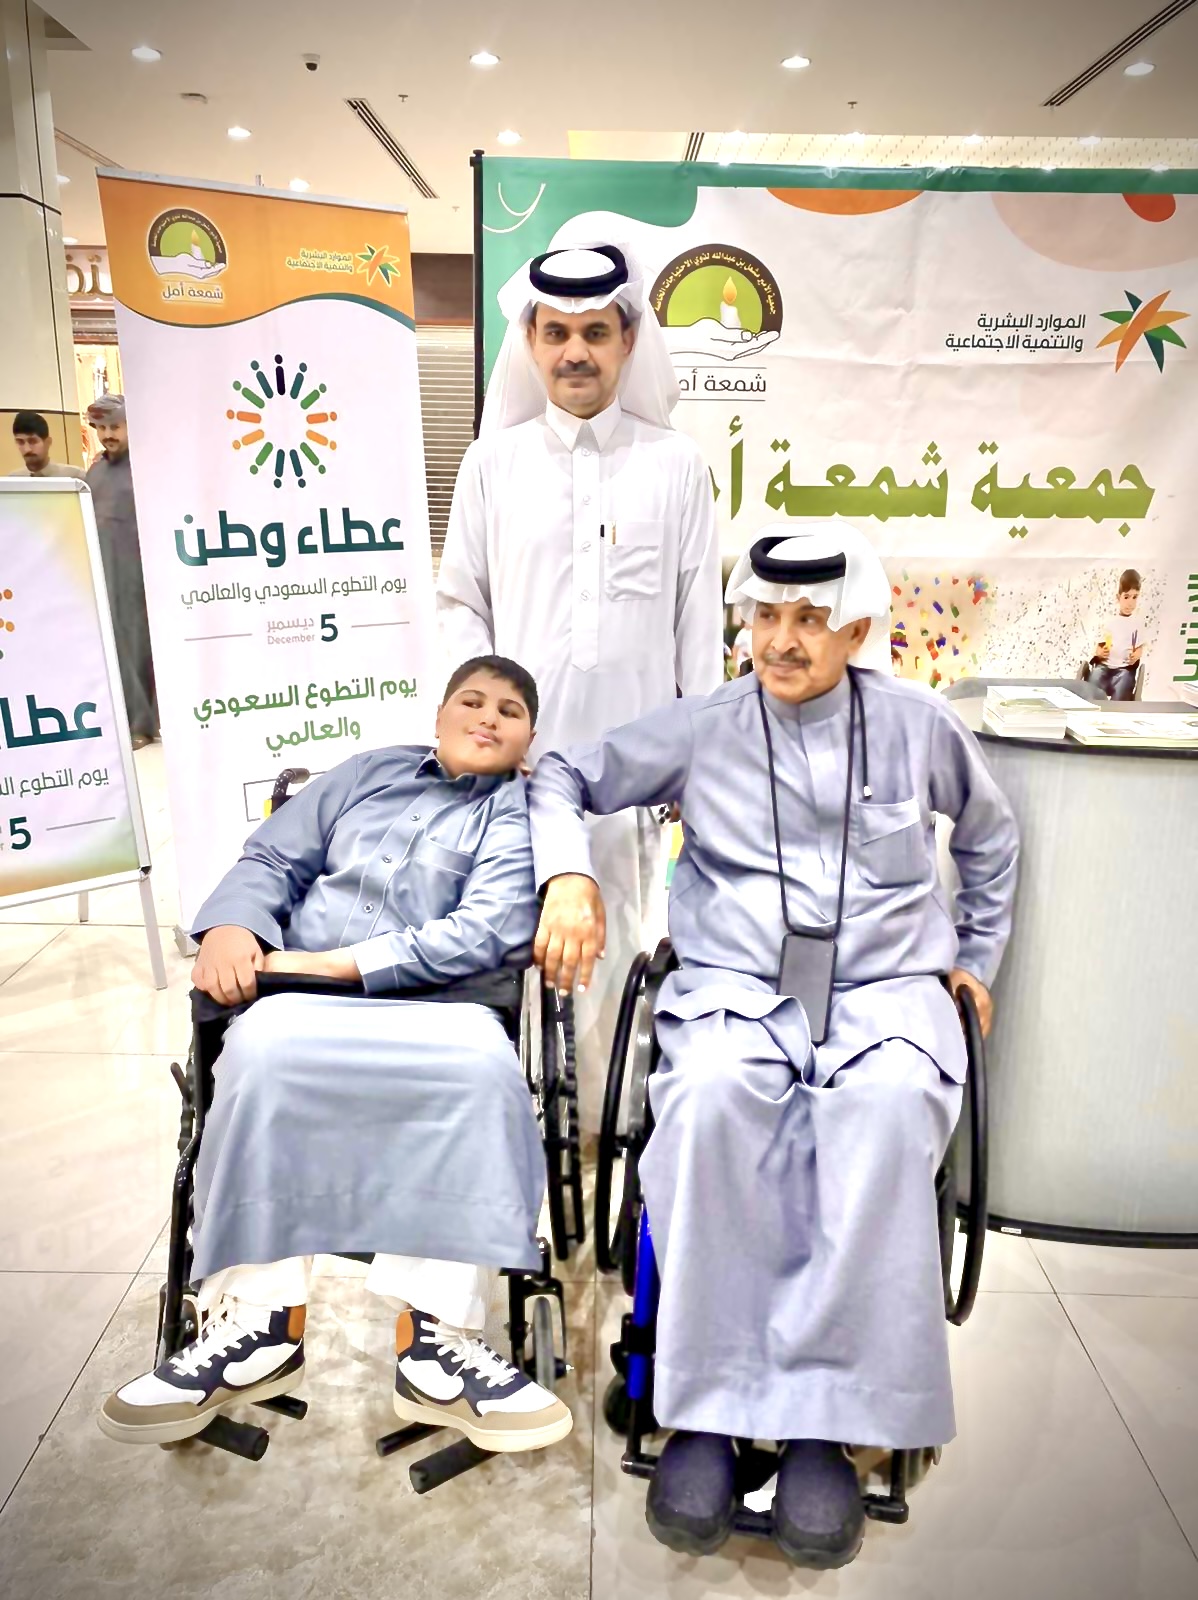 أركان الجمعية لمدة 3 أيام بمناسبة اليوم العالمي للإعاقة والتطوع للعام 2022 م